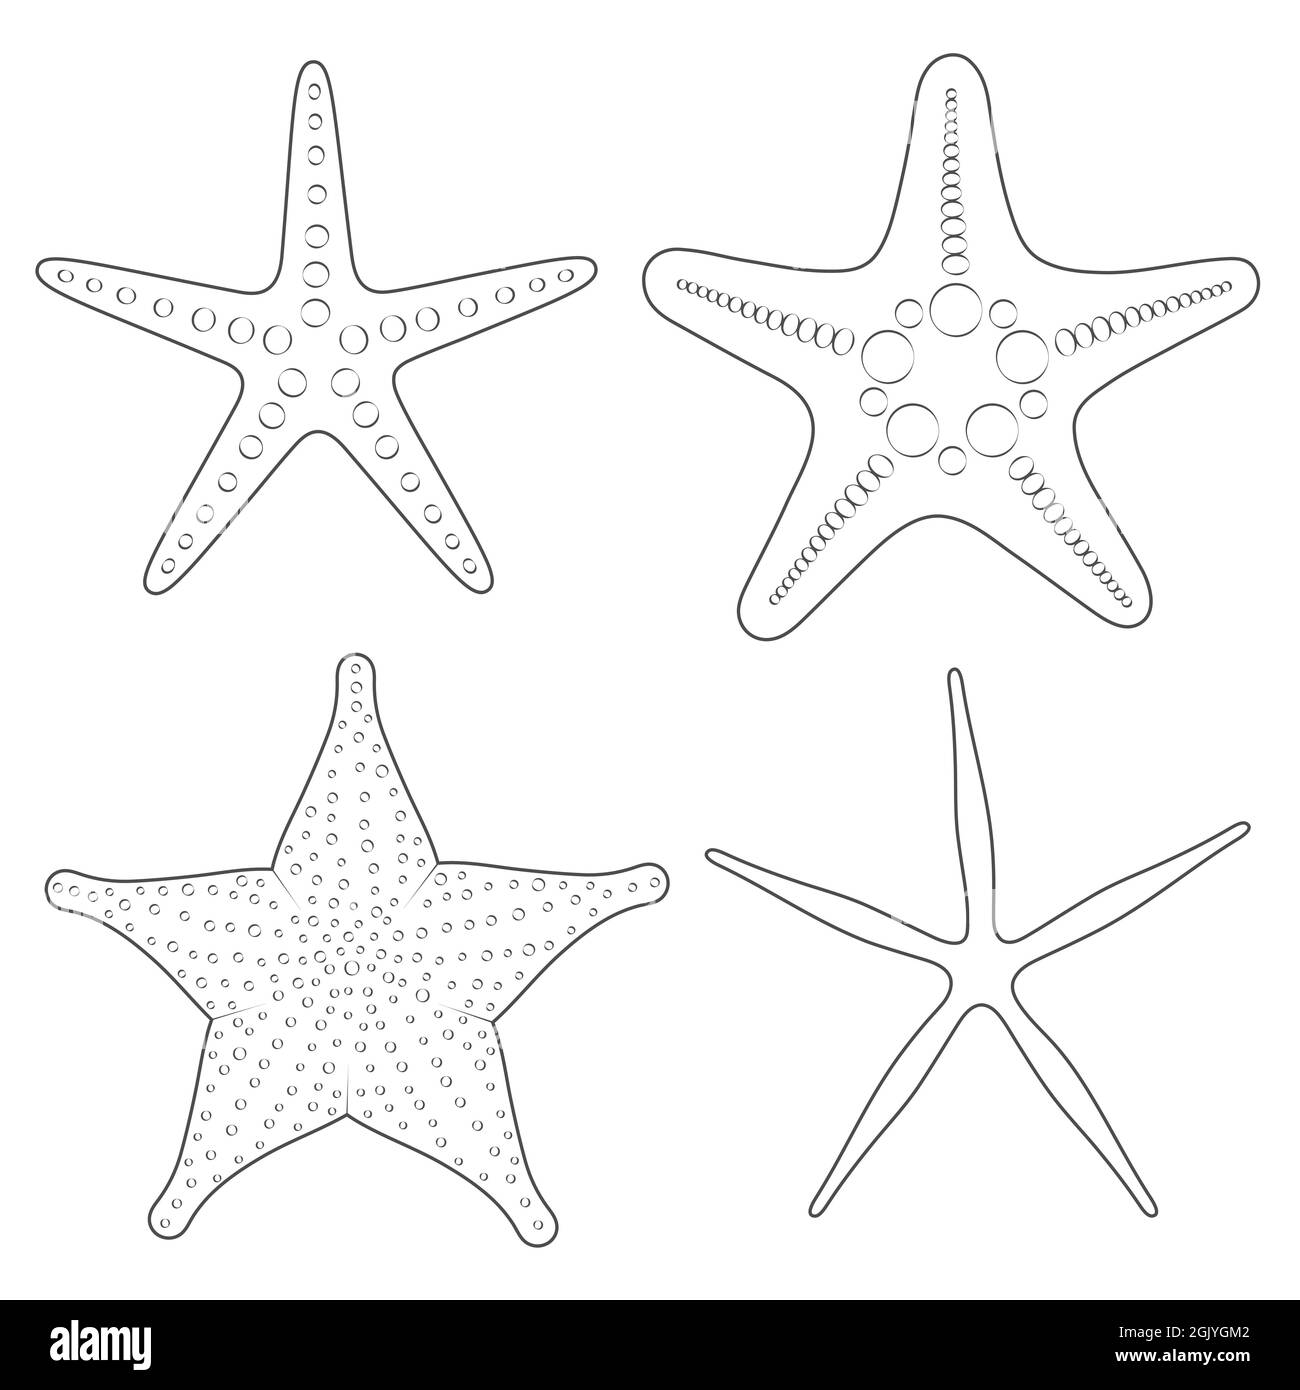 Ensemble d'images graphiques en noir et blanc des étoiles de mer. Objets vectoriels isolés sur fond blanc. Illustration de Vecteur